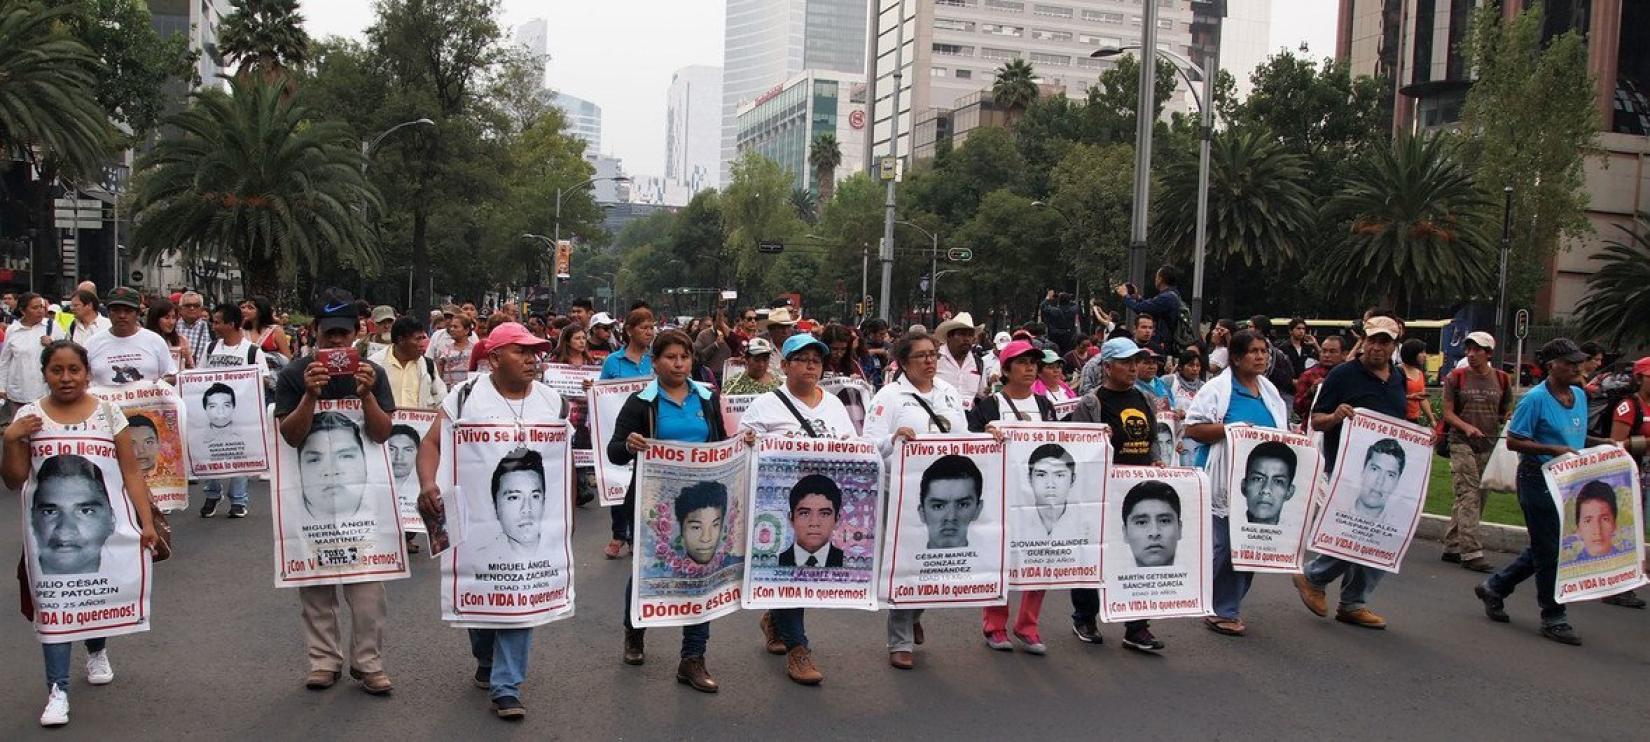 Protesto na Cidade do México sobre o caso da escola rural de Ayoitzinapa frequentada pelos 43 estudantes desaparecidos.